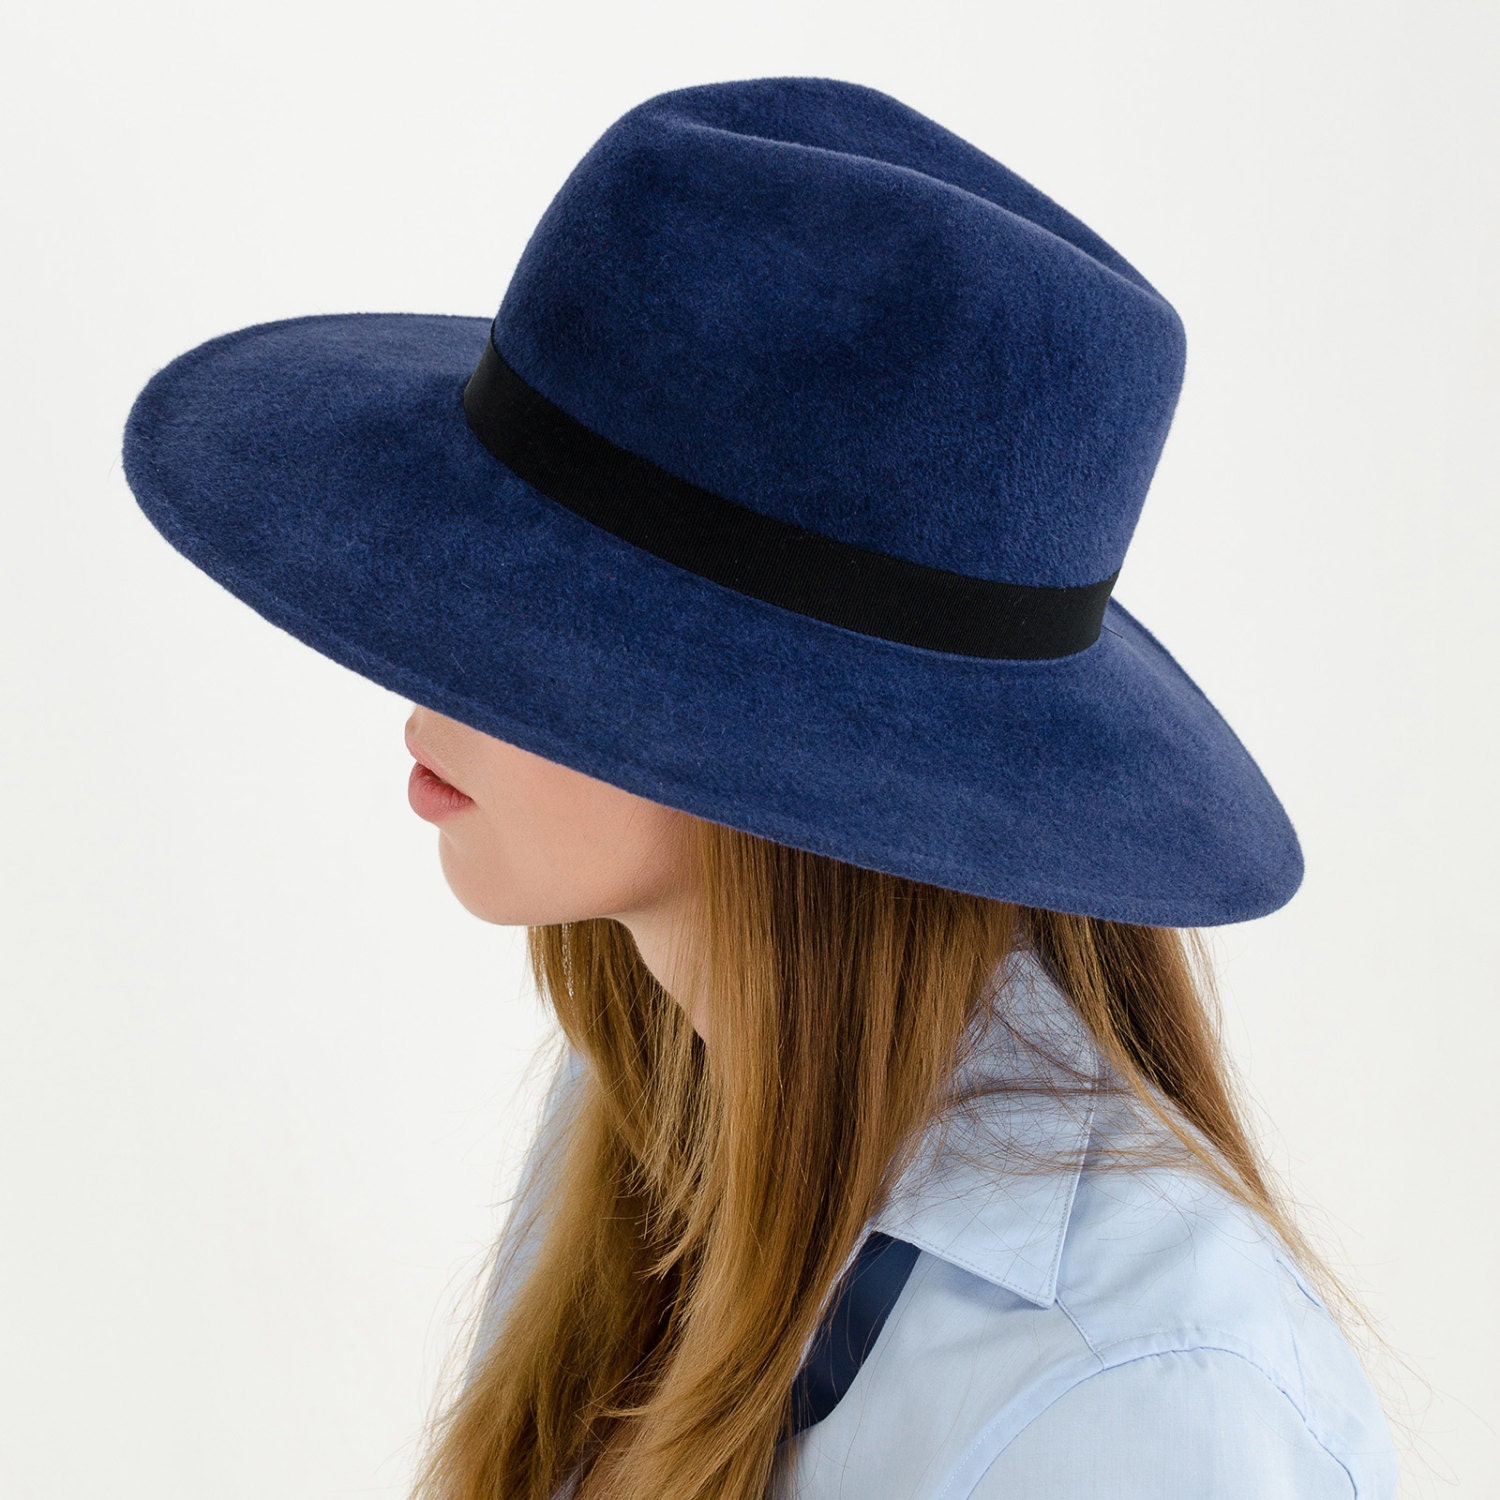 Шляпа синего цвета. Шляпа Федора wide Brim. Фетровая шляпа Федора. Синяя шляпа. Шляпа фетровая синяя женская.